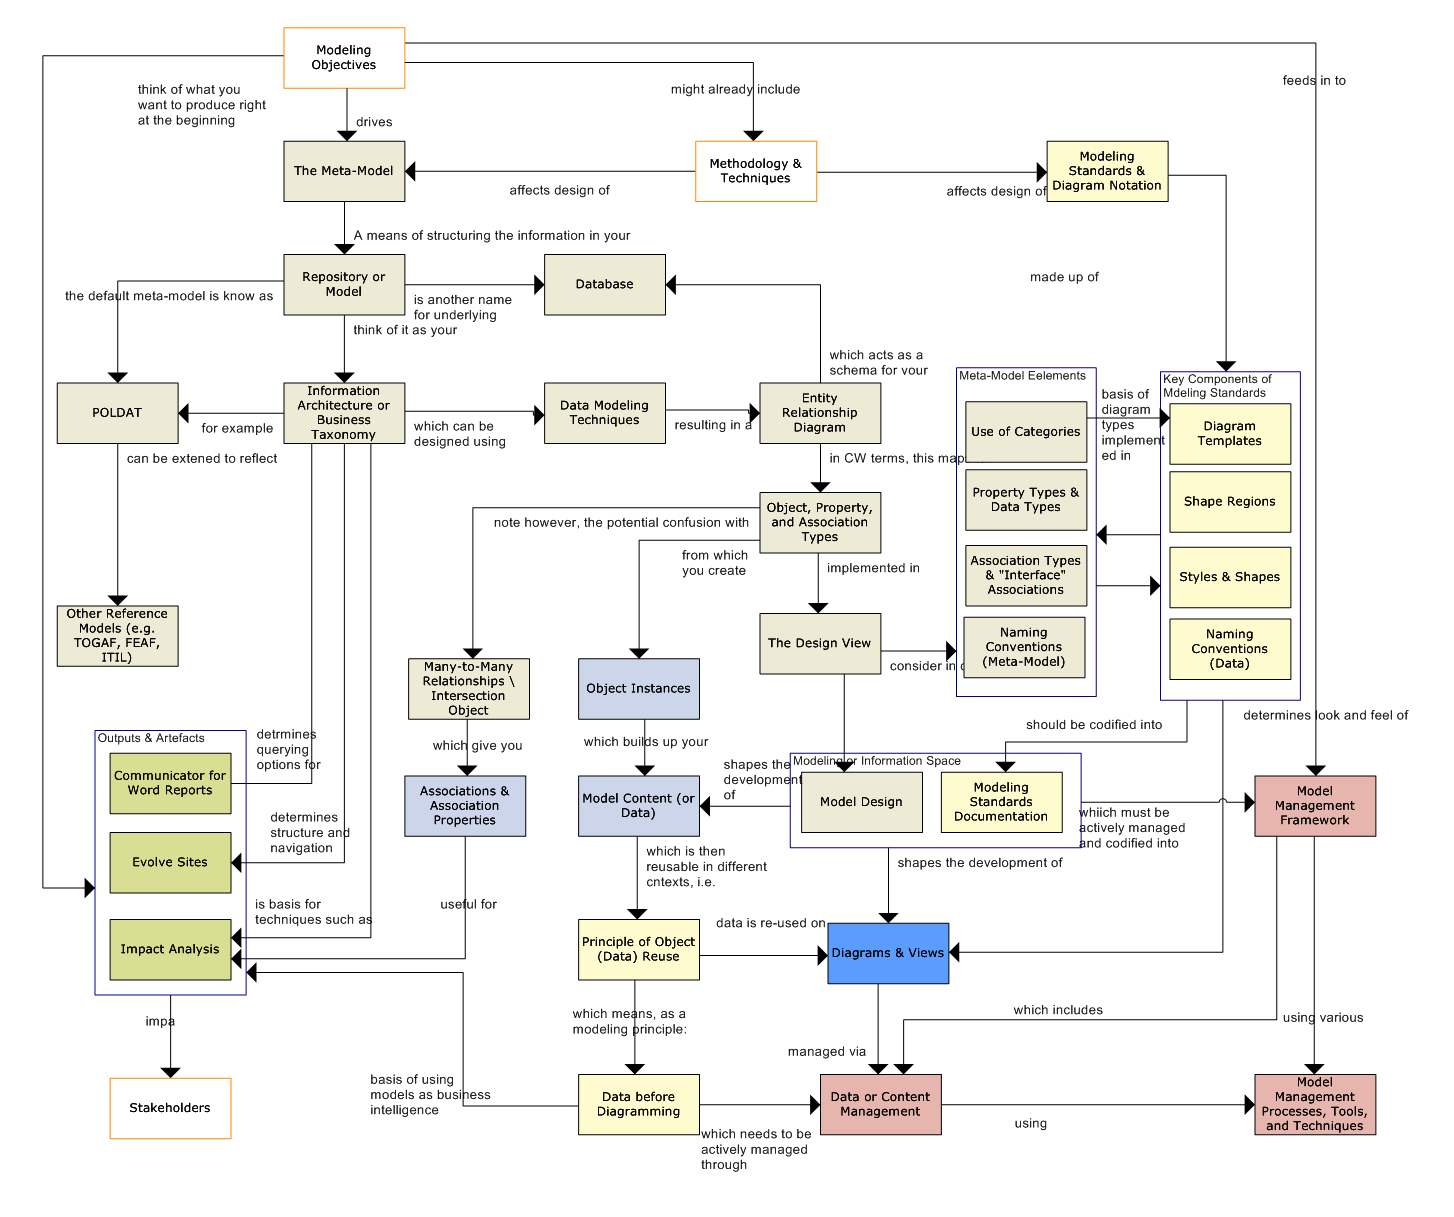 Concepts Diagram 01 Model Design & Modeling Standards